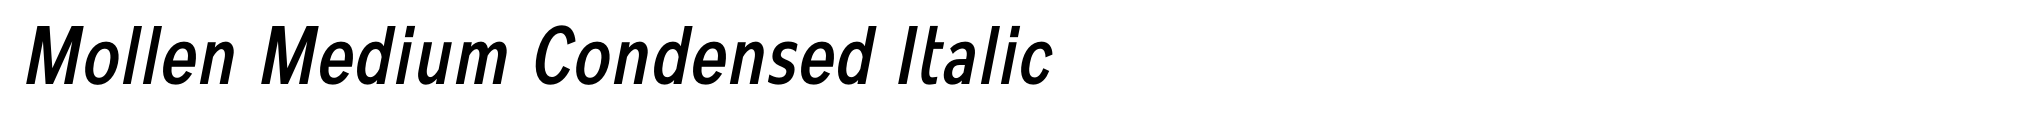 Mollen Medium Condensed Italic image